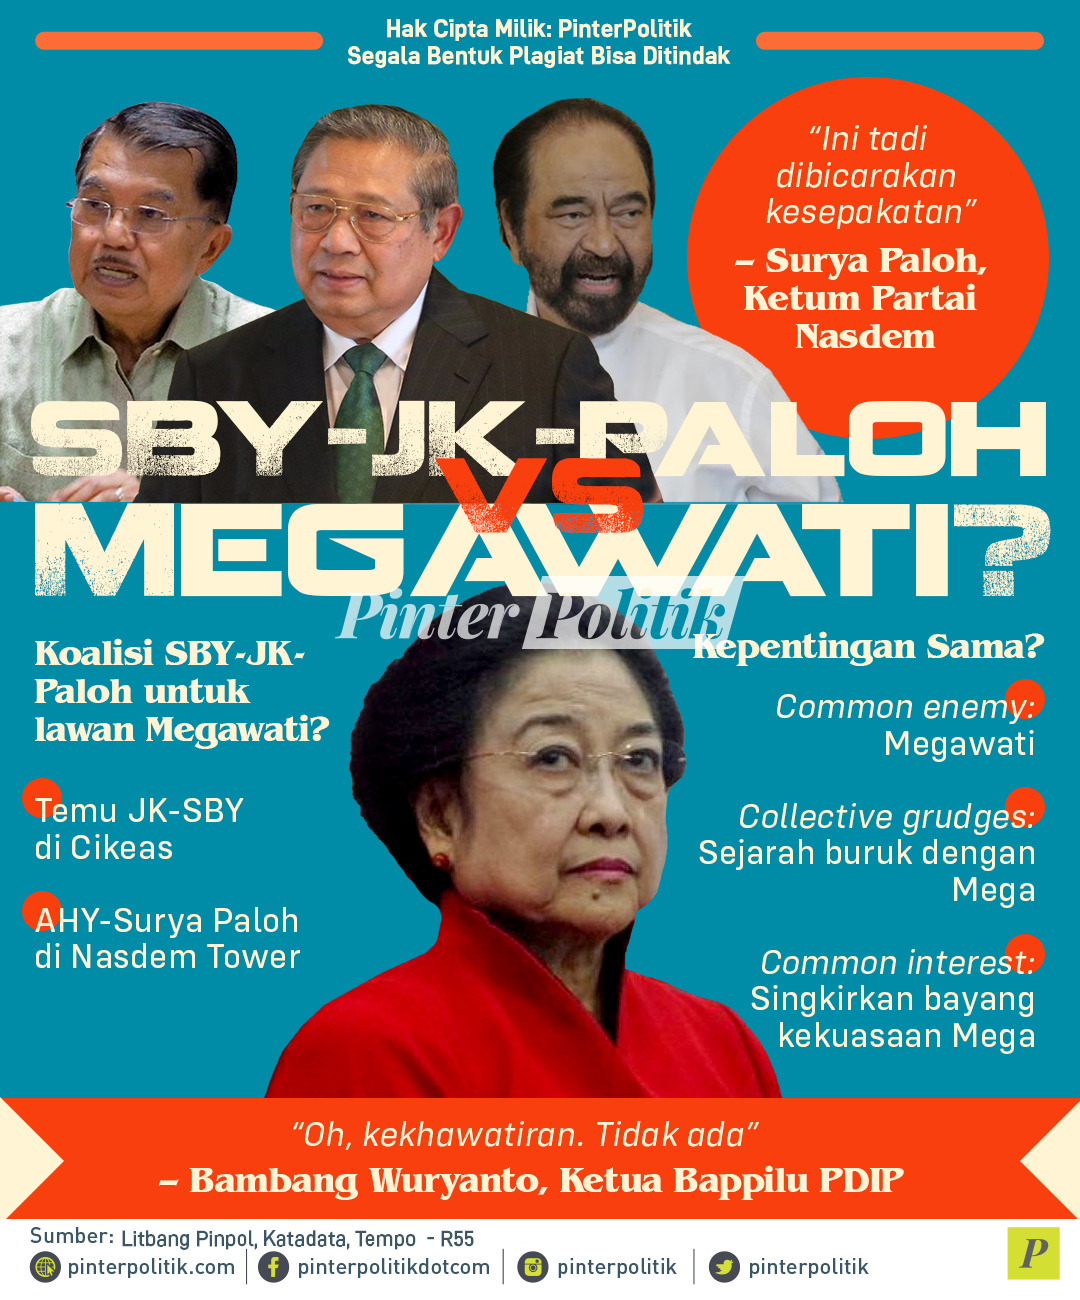 SBY JK Paloh vs Megawati